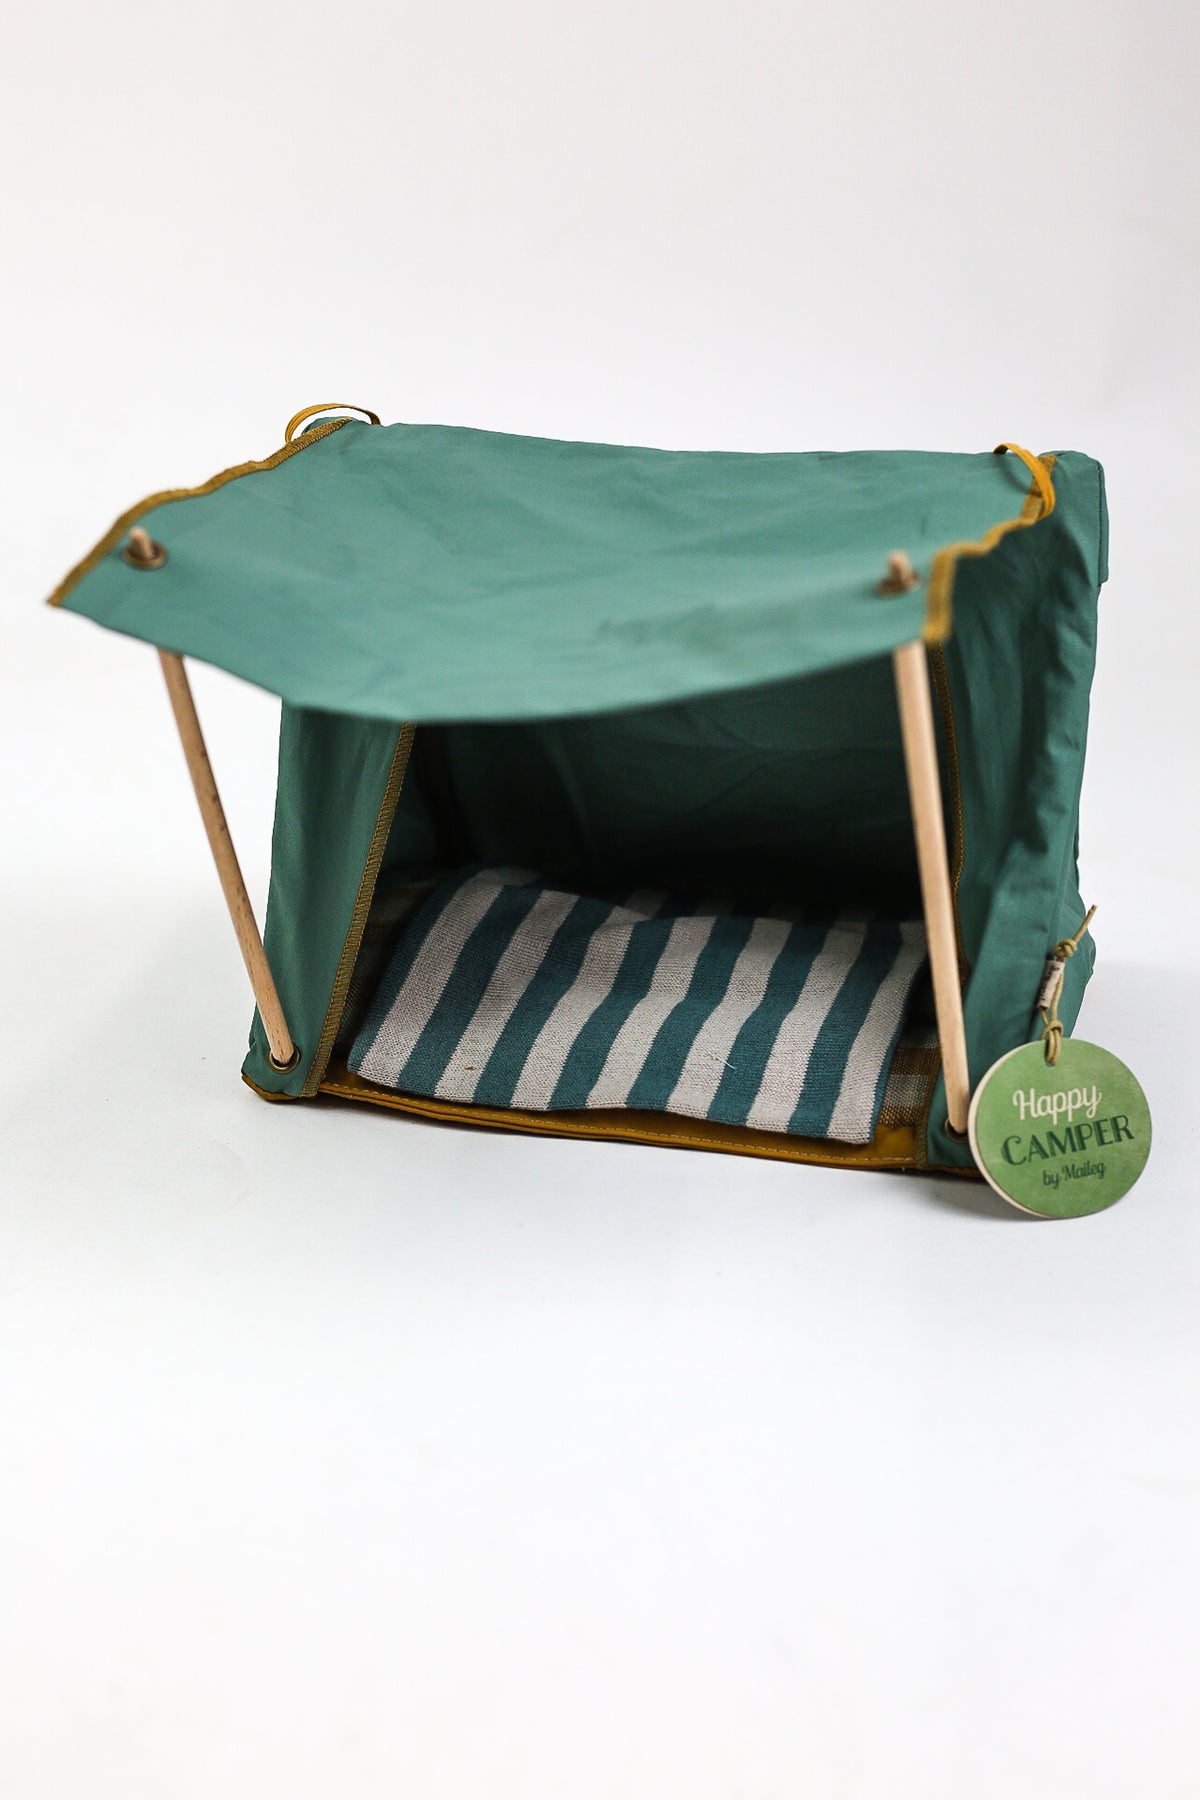 New Happy Camper Tent